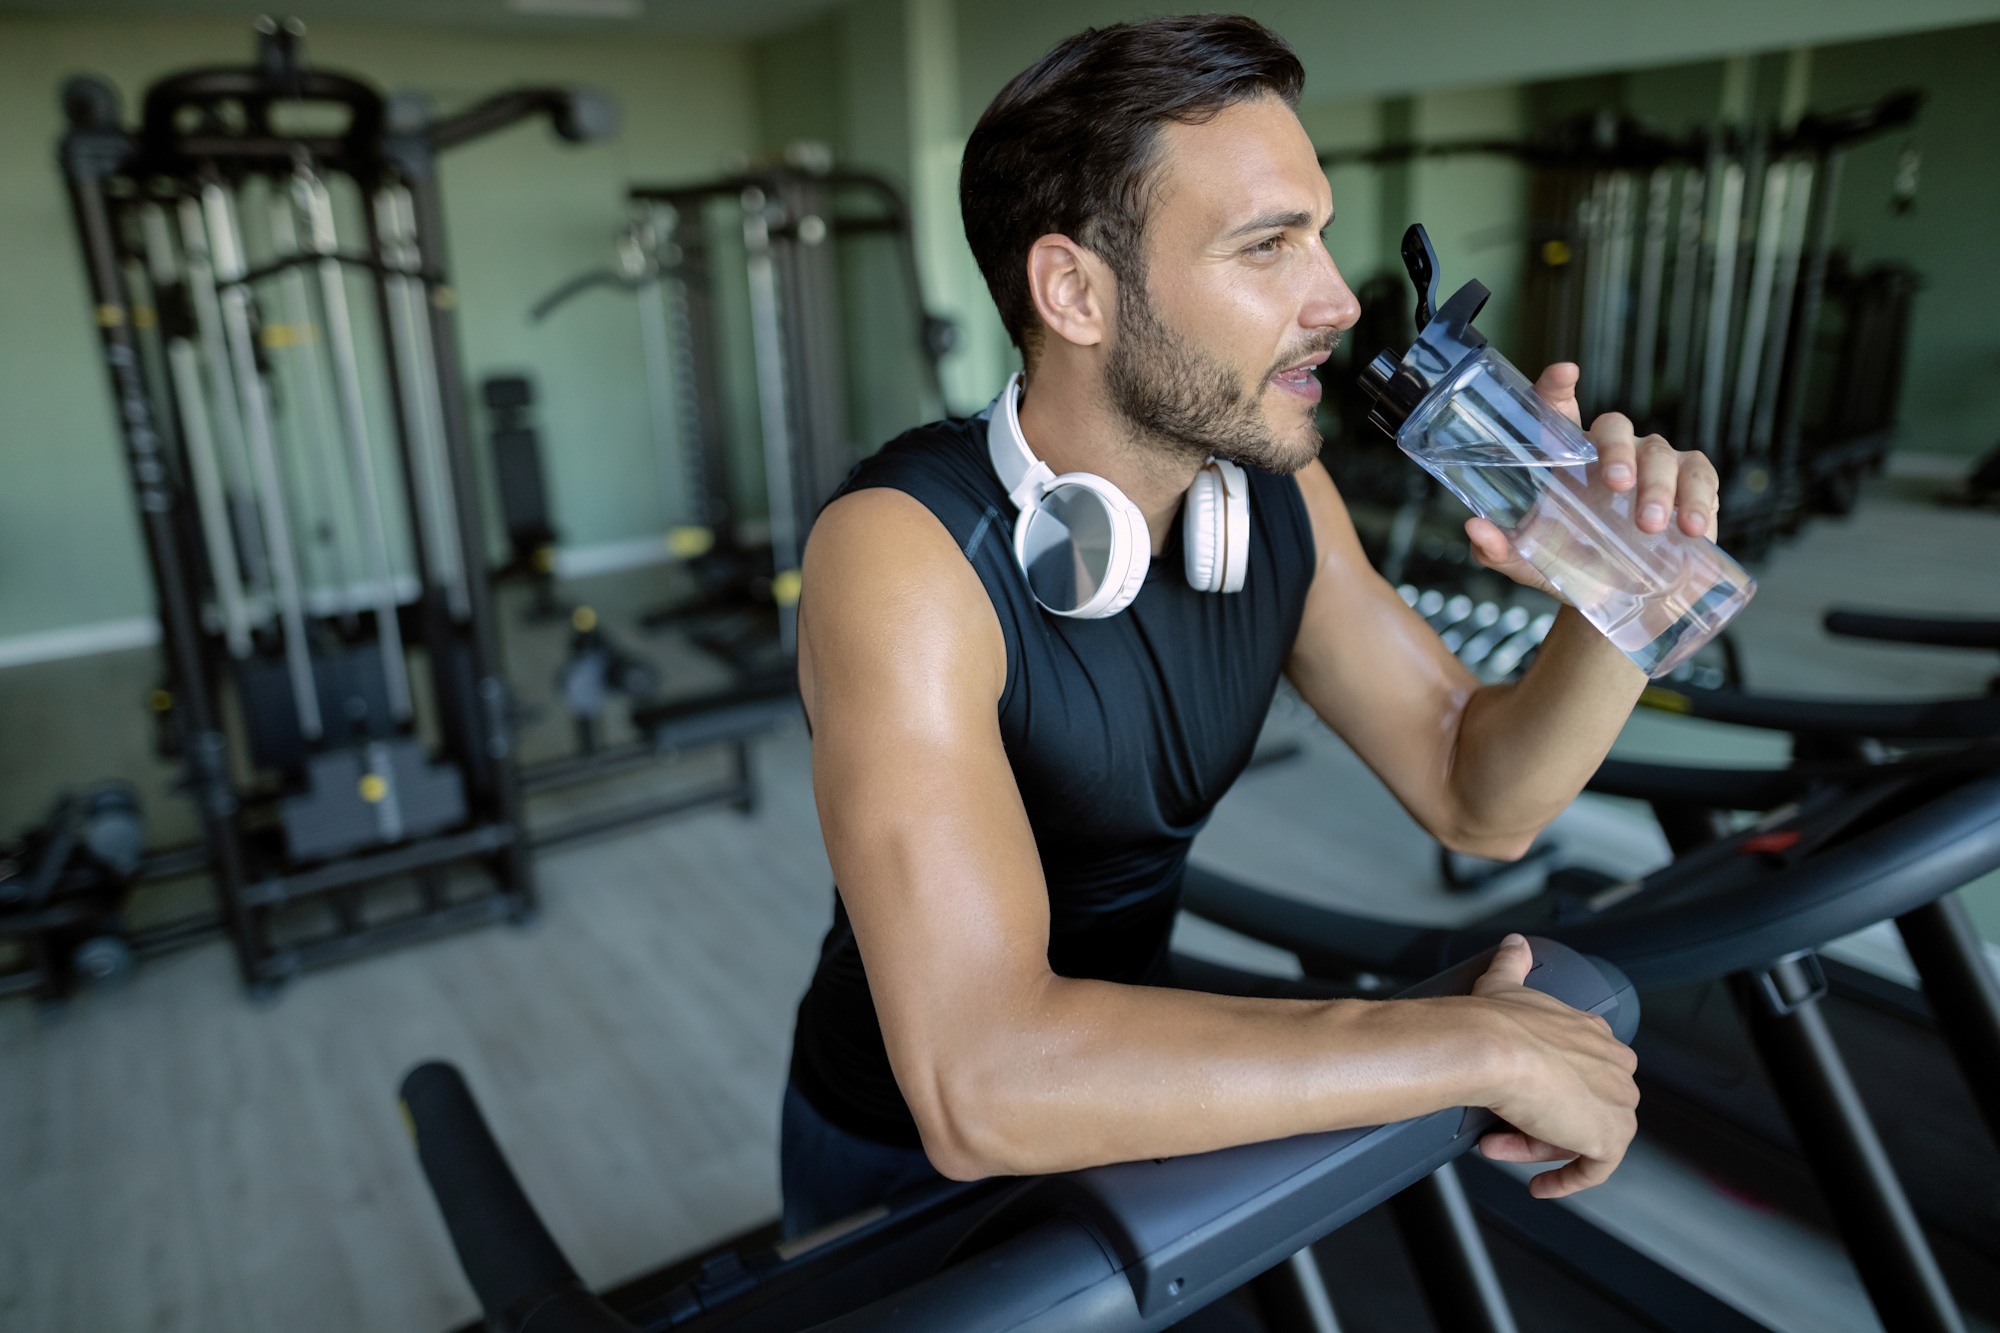 Water drinken bij fitness belangrijk?